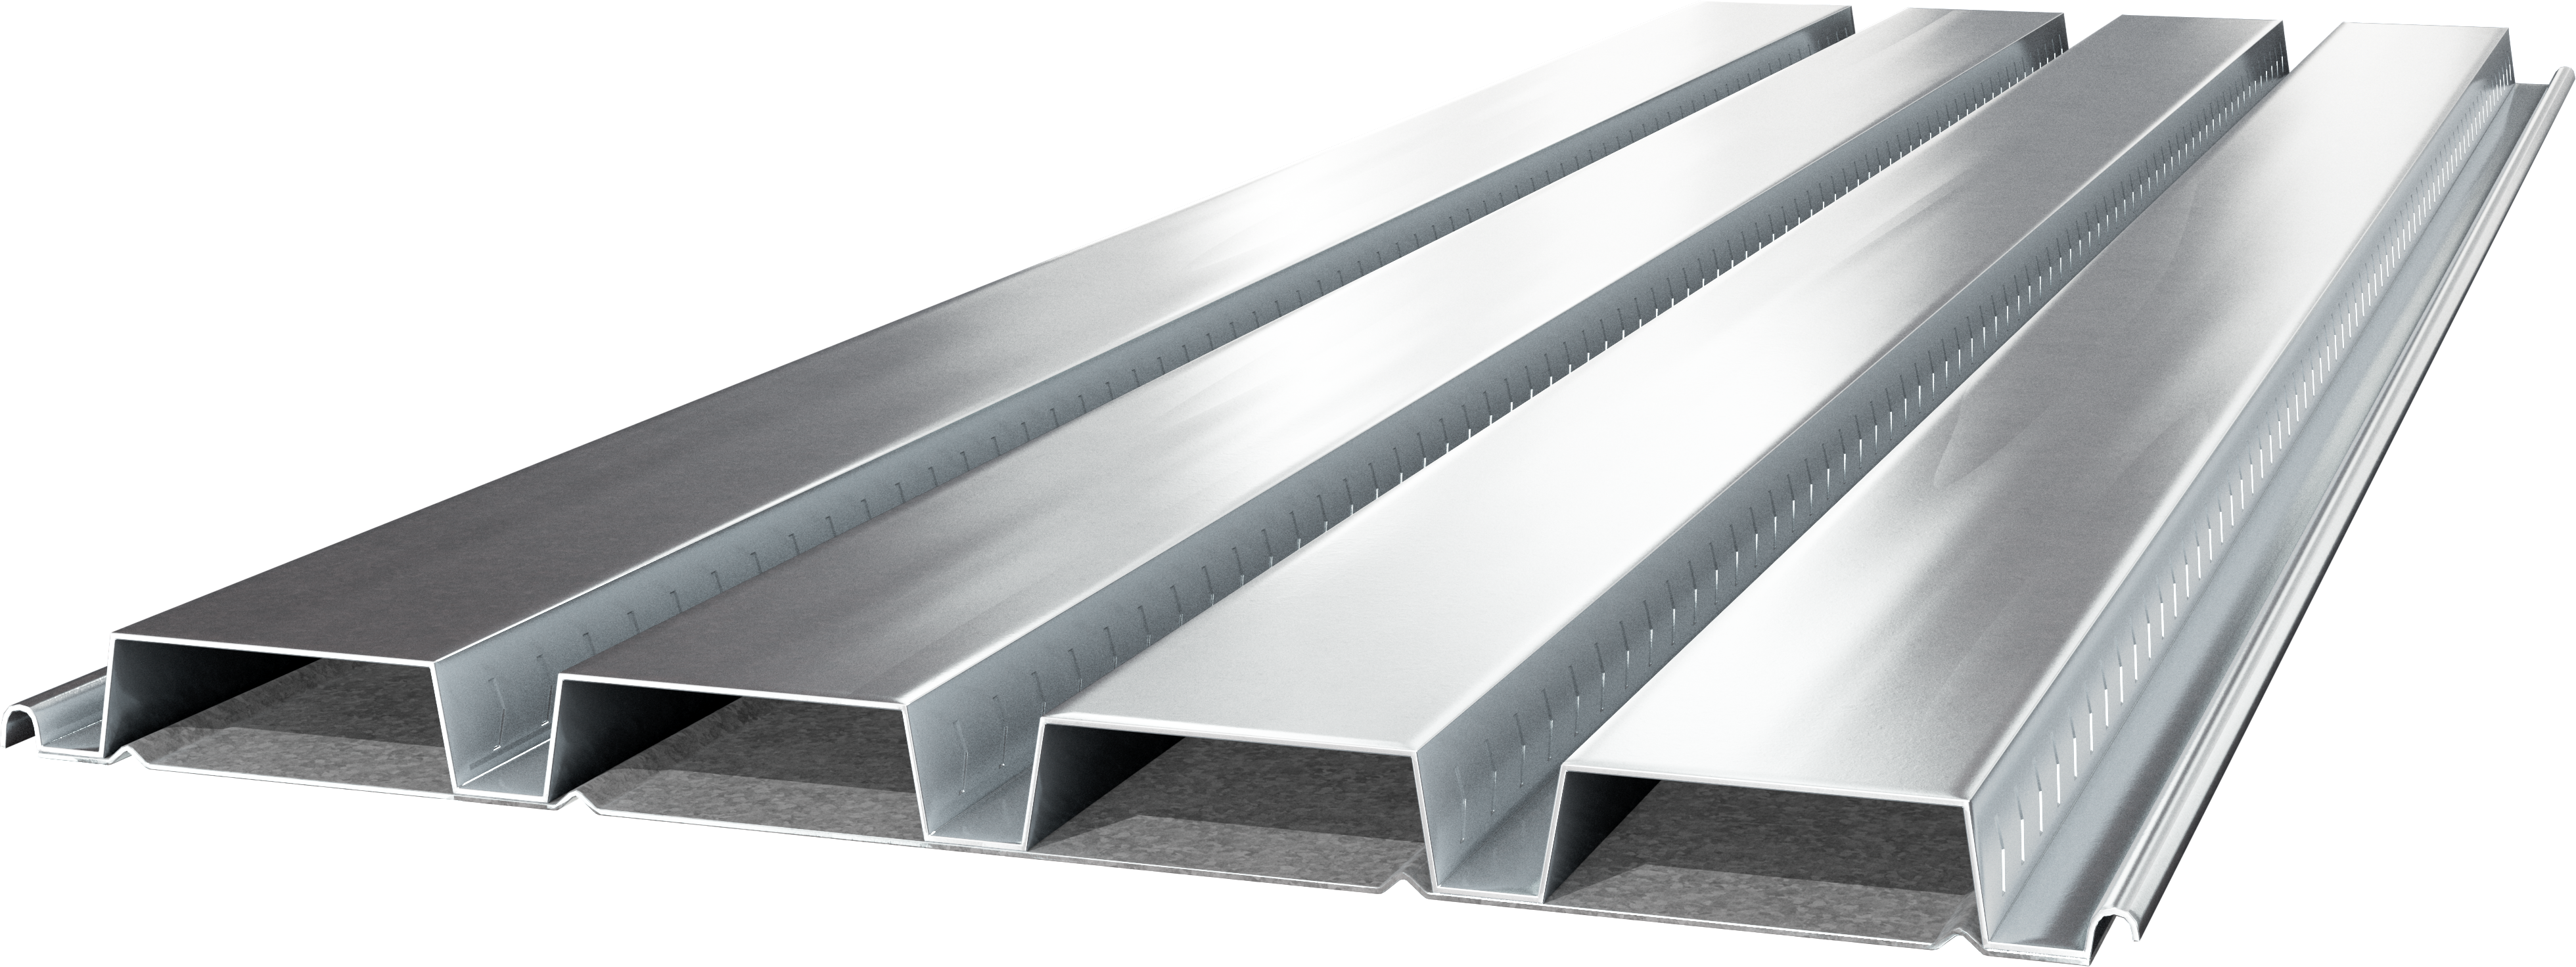 Metal 1.5 Cellular Composite Metal Floor Deck | Cellular Steel Floor Deck | Cordeck